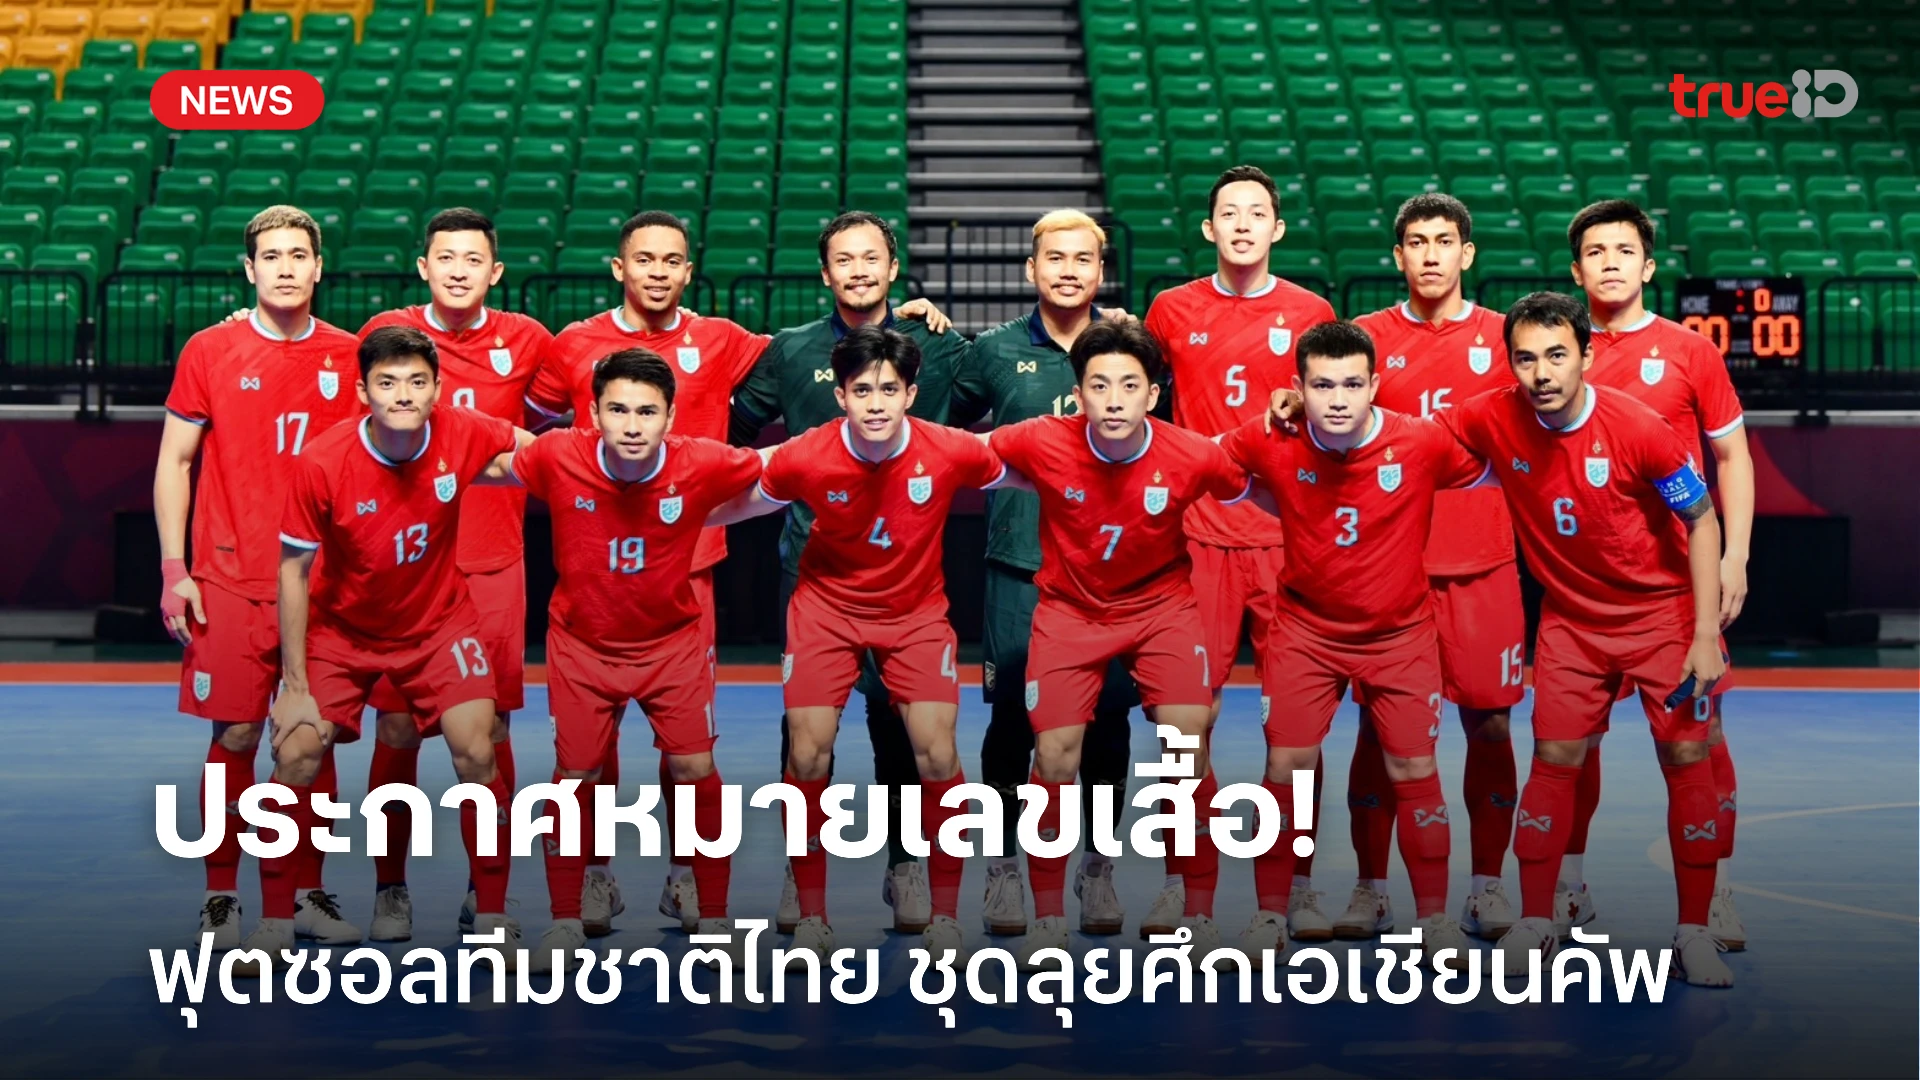 ประกาศหมายเลขเสื้อ 14 นักฟุตซอลทีมชาติไทย ชุดลุยศึก เอเอฟซี ฟุตซอล เอเชียน คัพ 2024 ที่ประเทศไทย เพื่อชิงตั๋วศึกฟุตซอลชิงแชมป์โลก 2024ศึกการแข่งขัน ฟุตซอลชิงแชมป์เอเชีย 